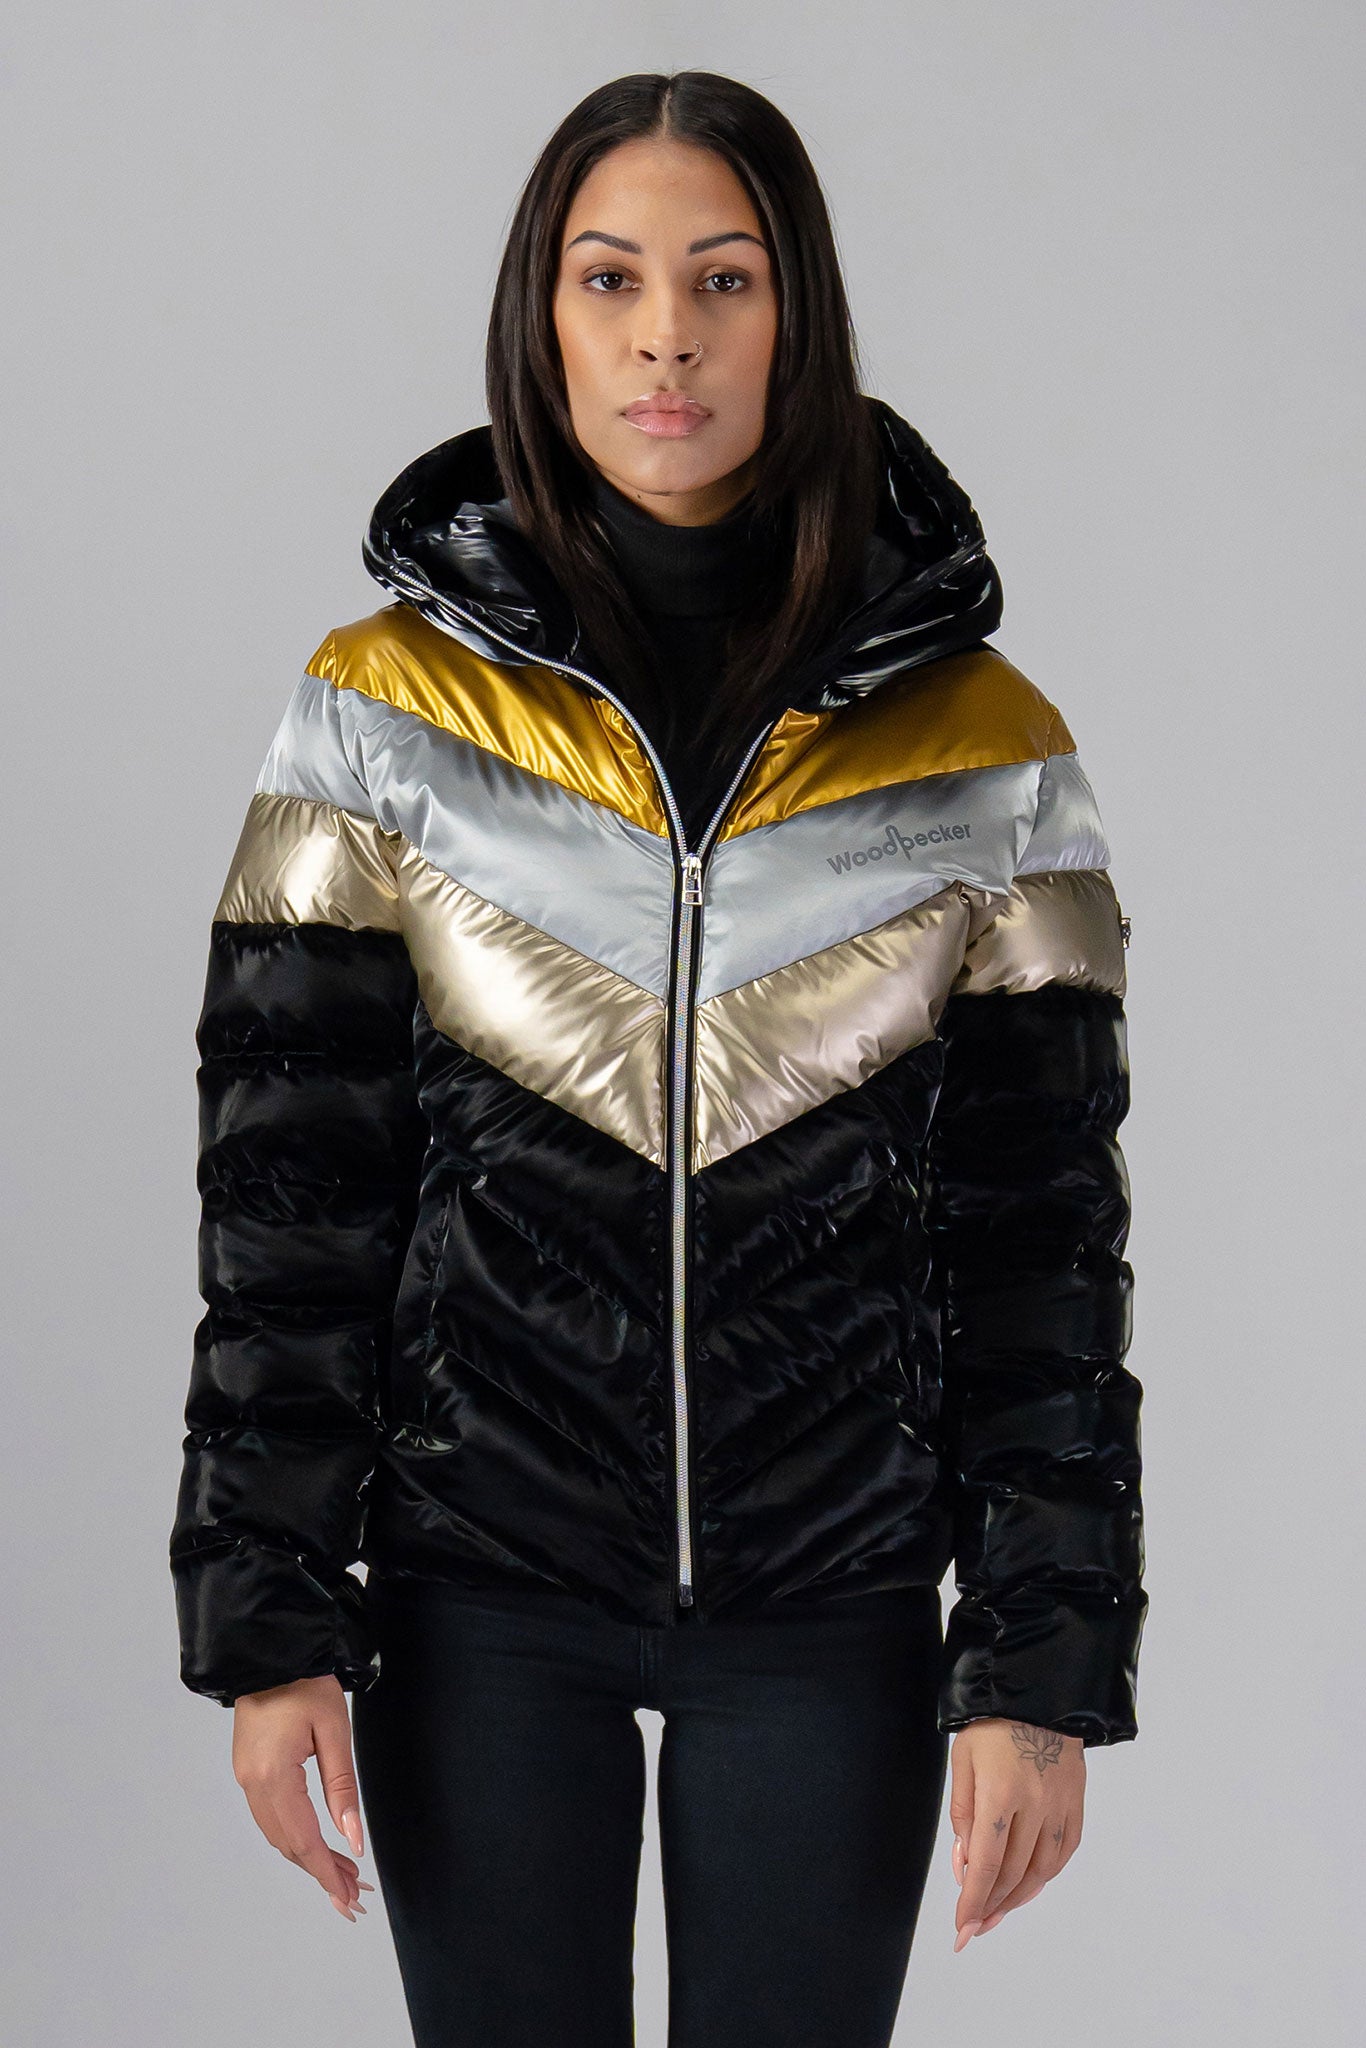 Woodpecker Women's Robin Winter coat. High-end Canadian designer winter coat for women in 